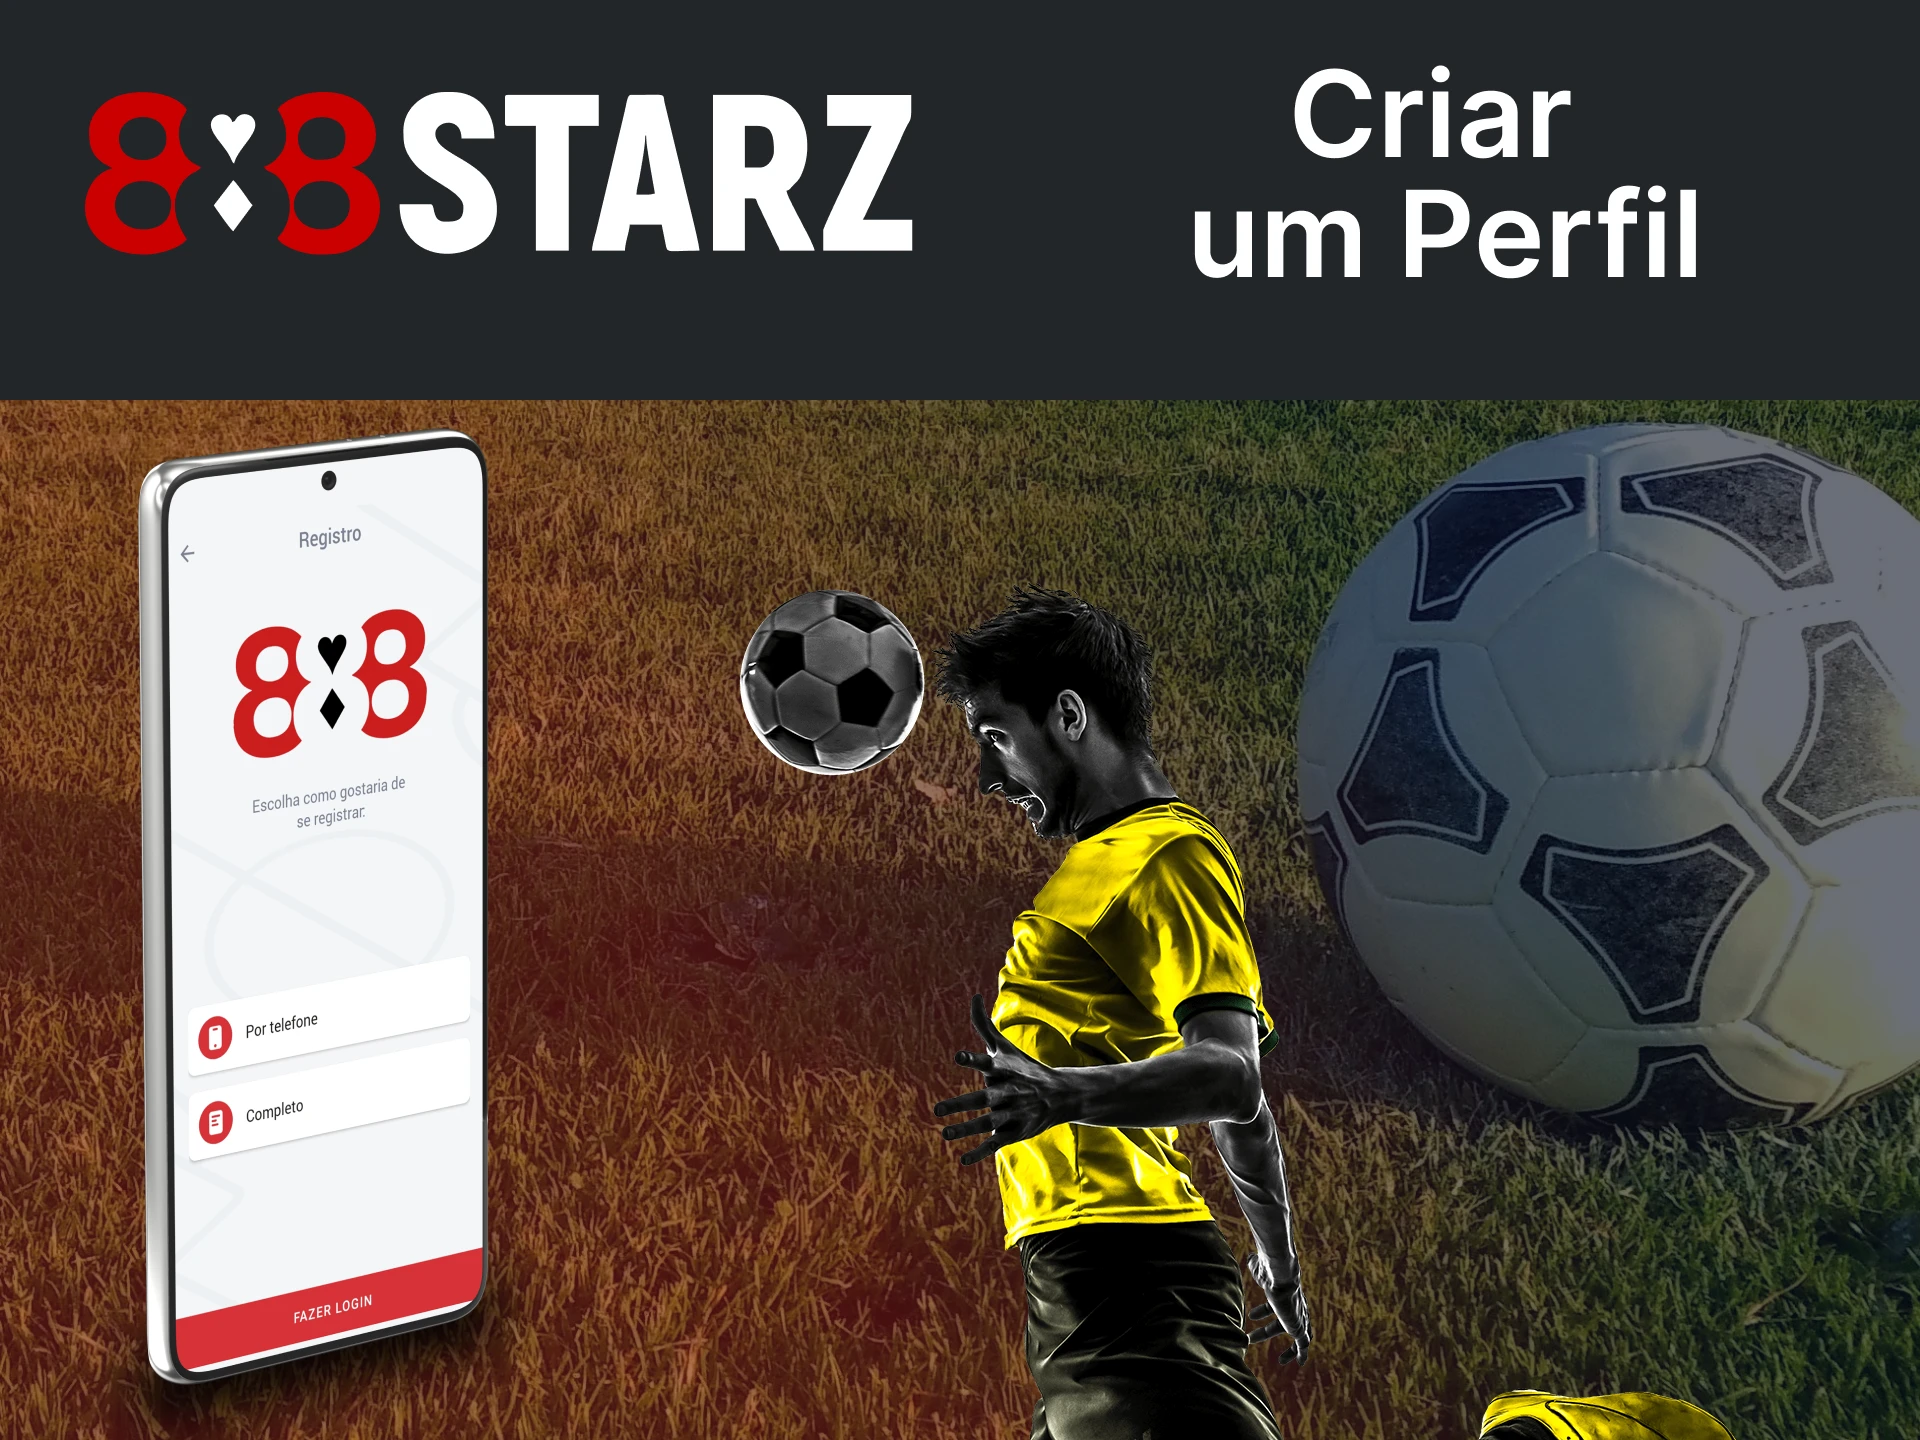 Crie uma conta de apostas de futebol com o aplicativo 888starz.